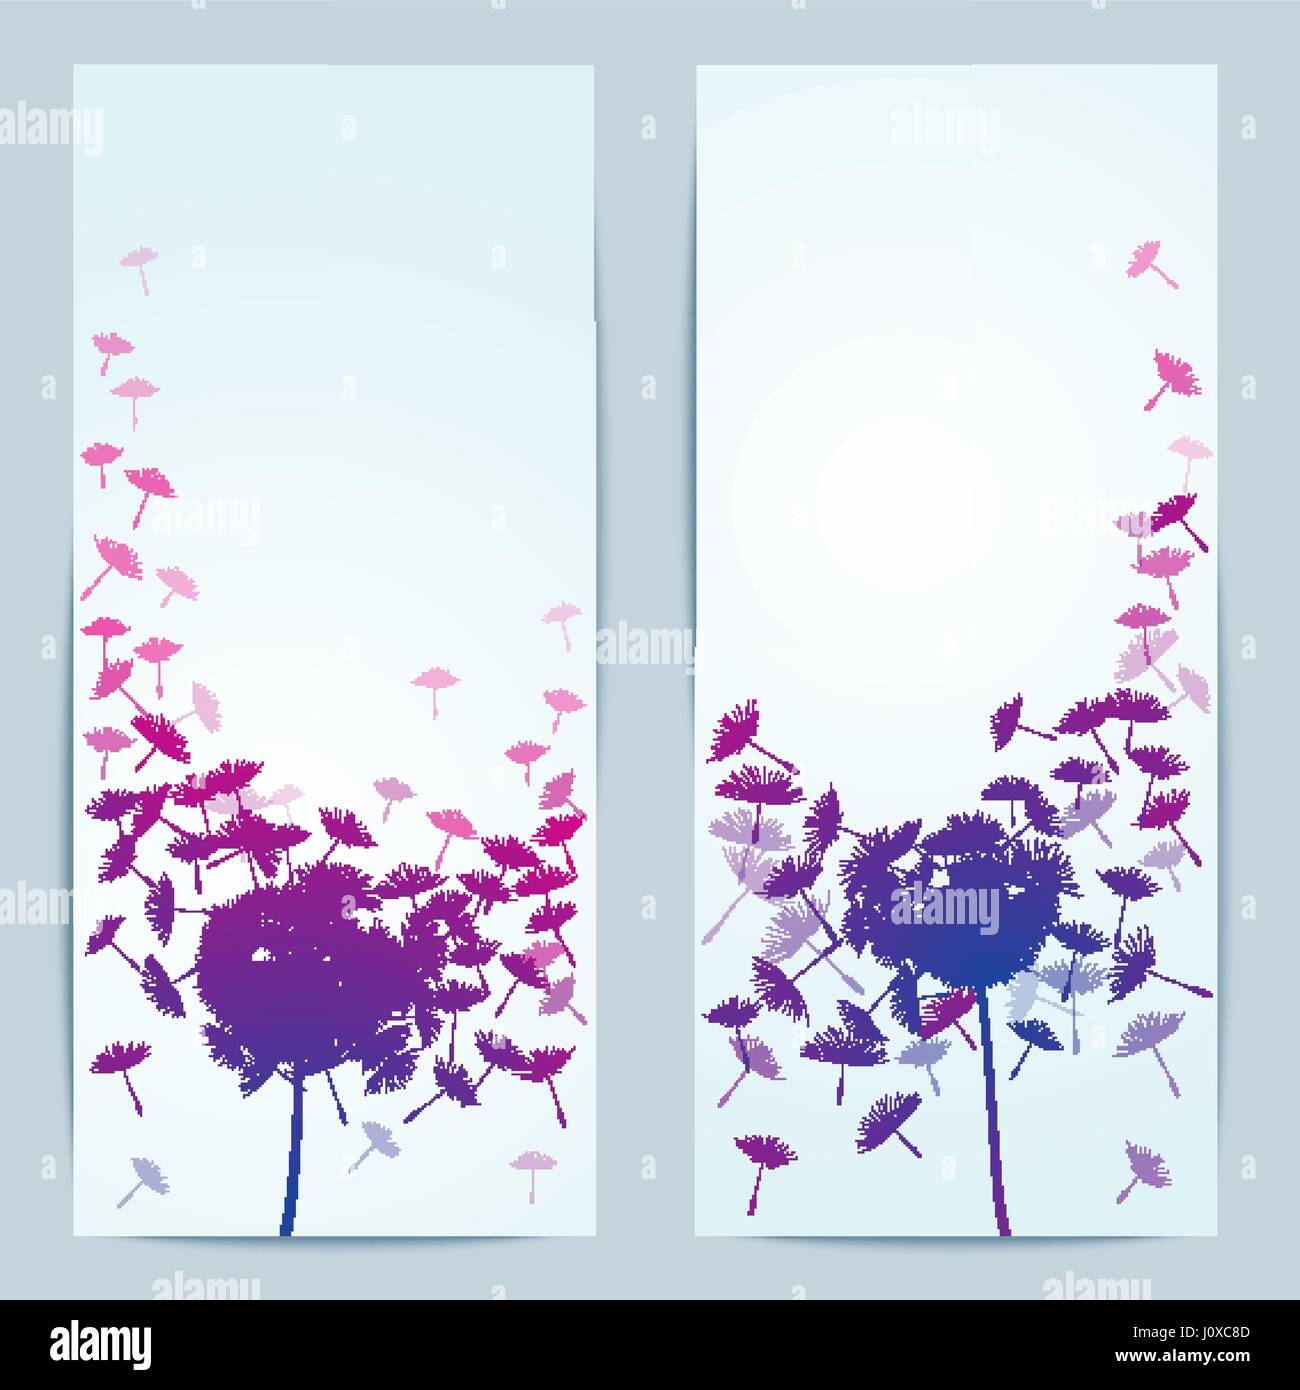 vector dandelion flower background for banner Stock Vector